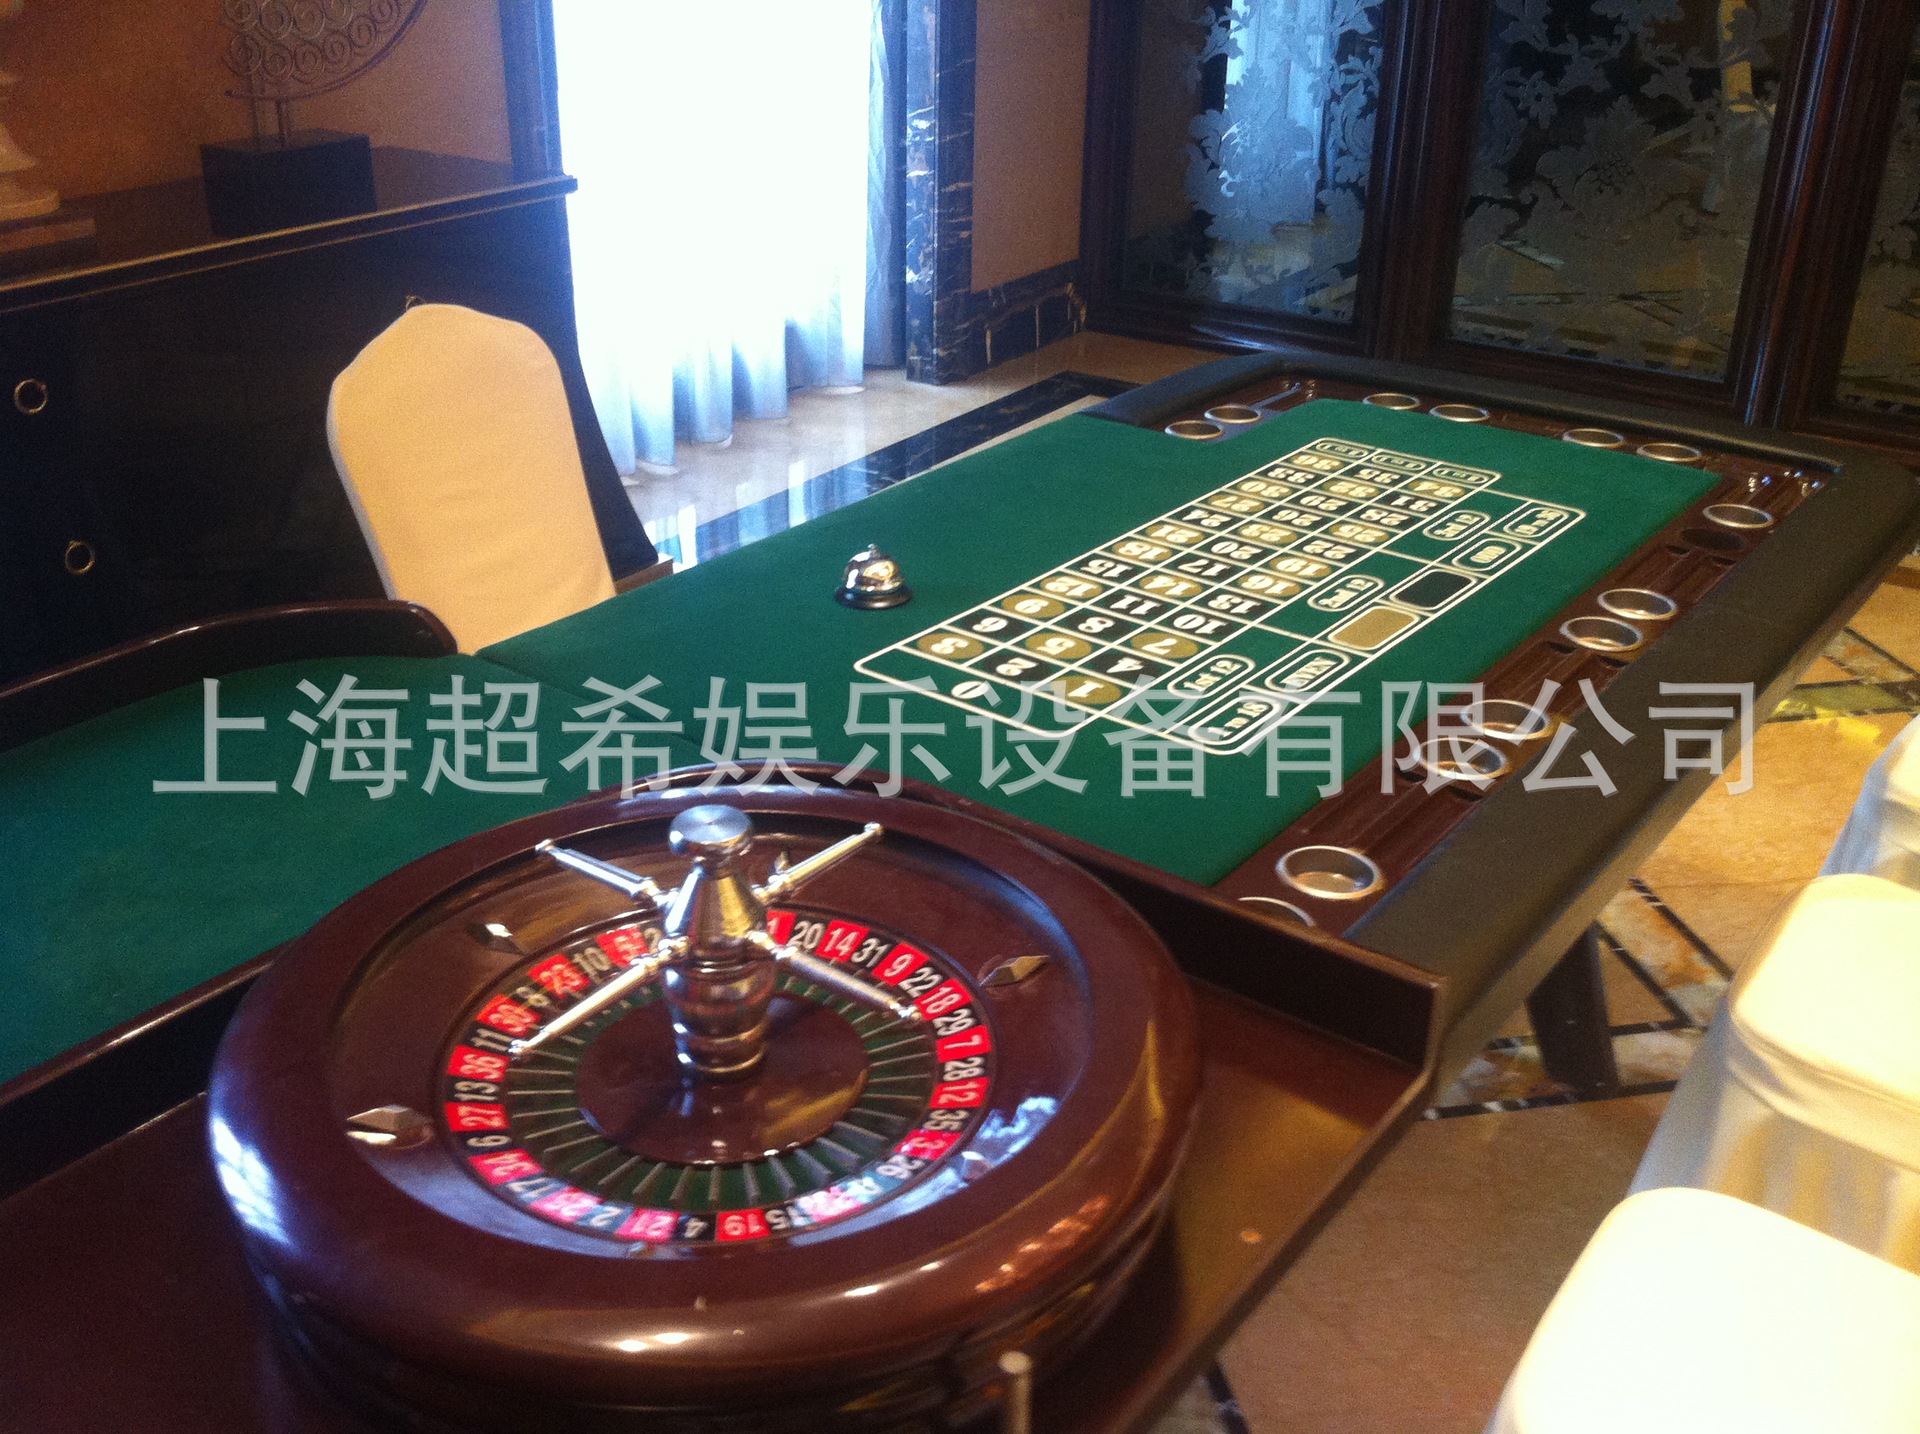 上海澳门拉斯维加斯游戏桌出租|配荷官礼仪|兔